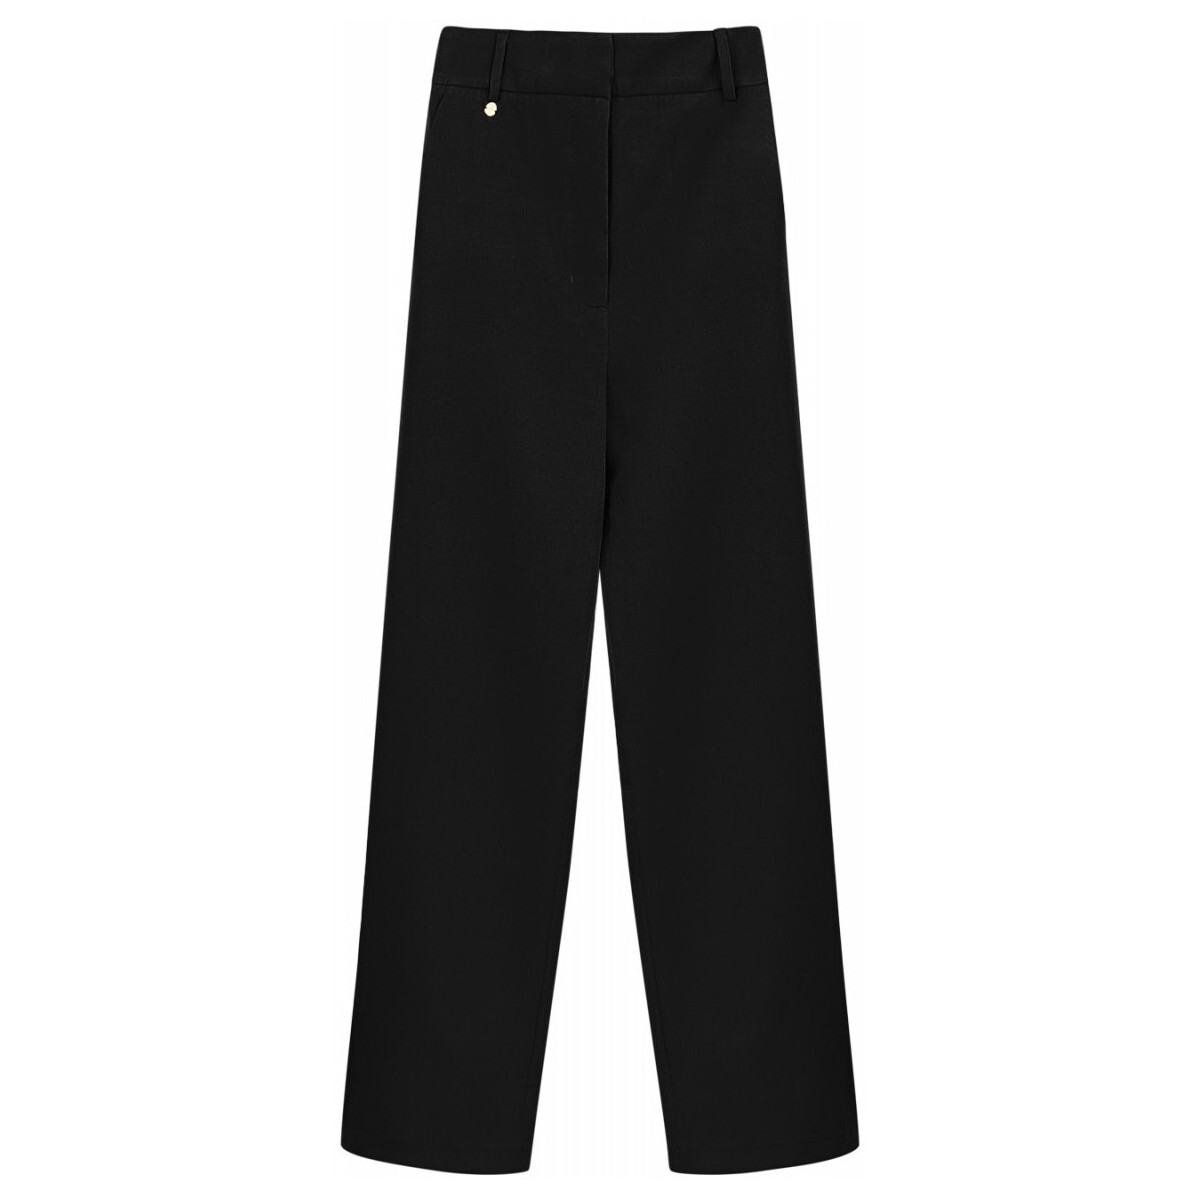 Textiel Dames Broeken / Pantalons Makupenda M604793G Zwart